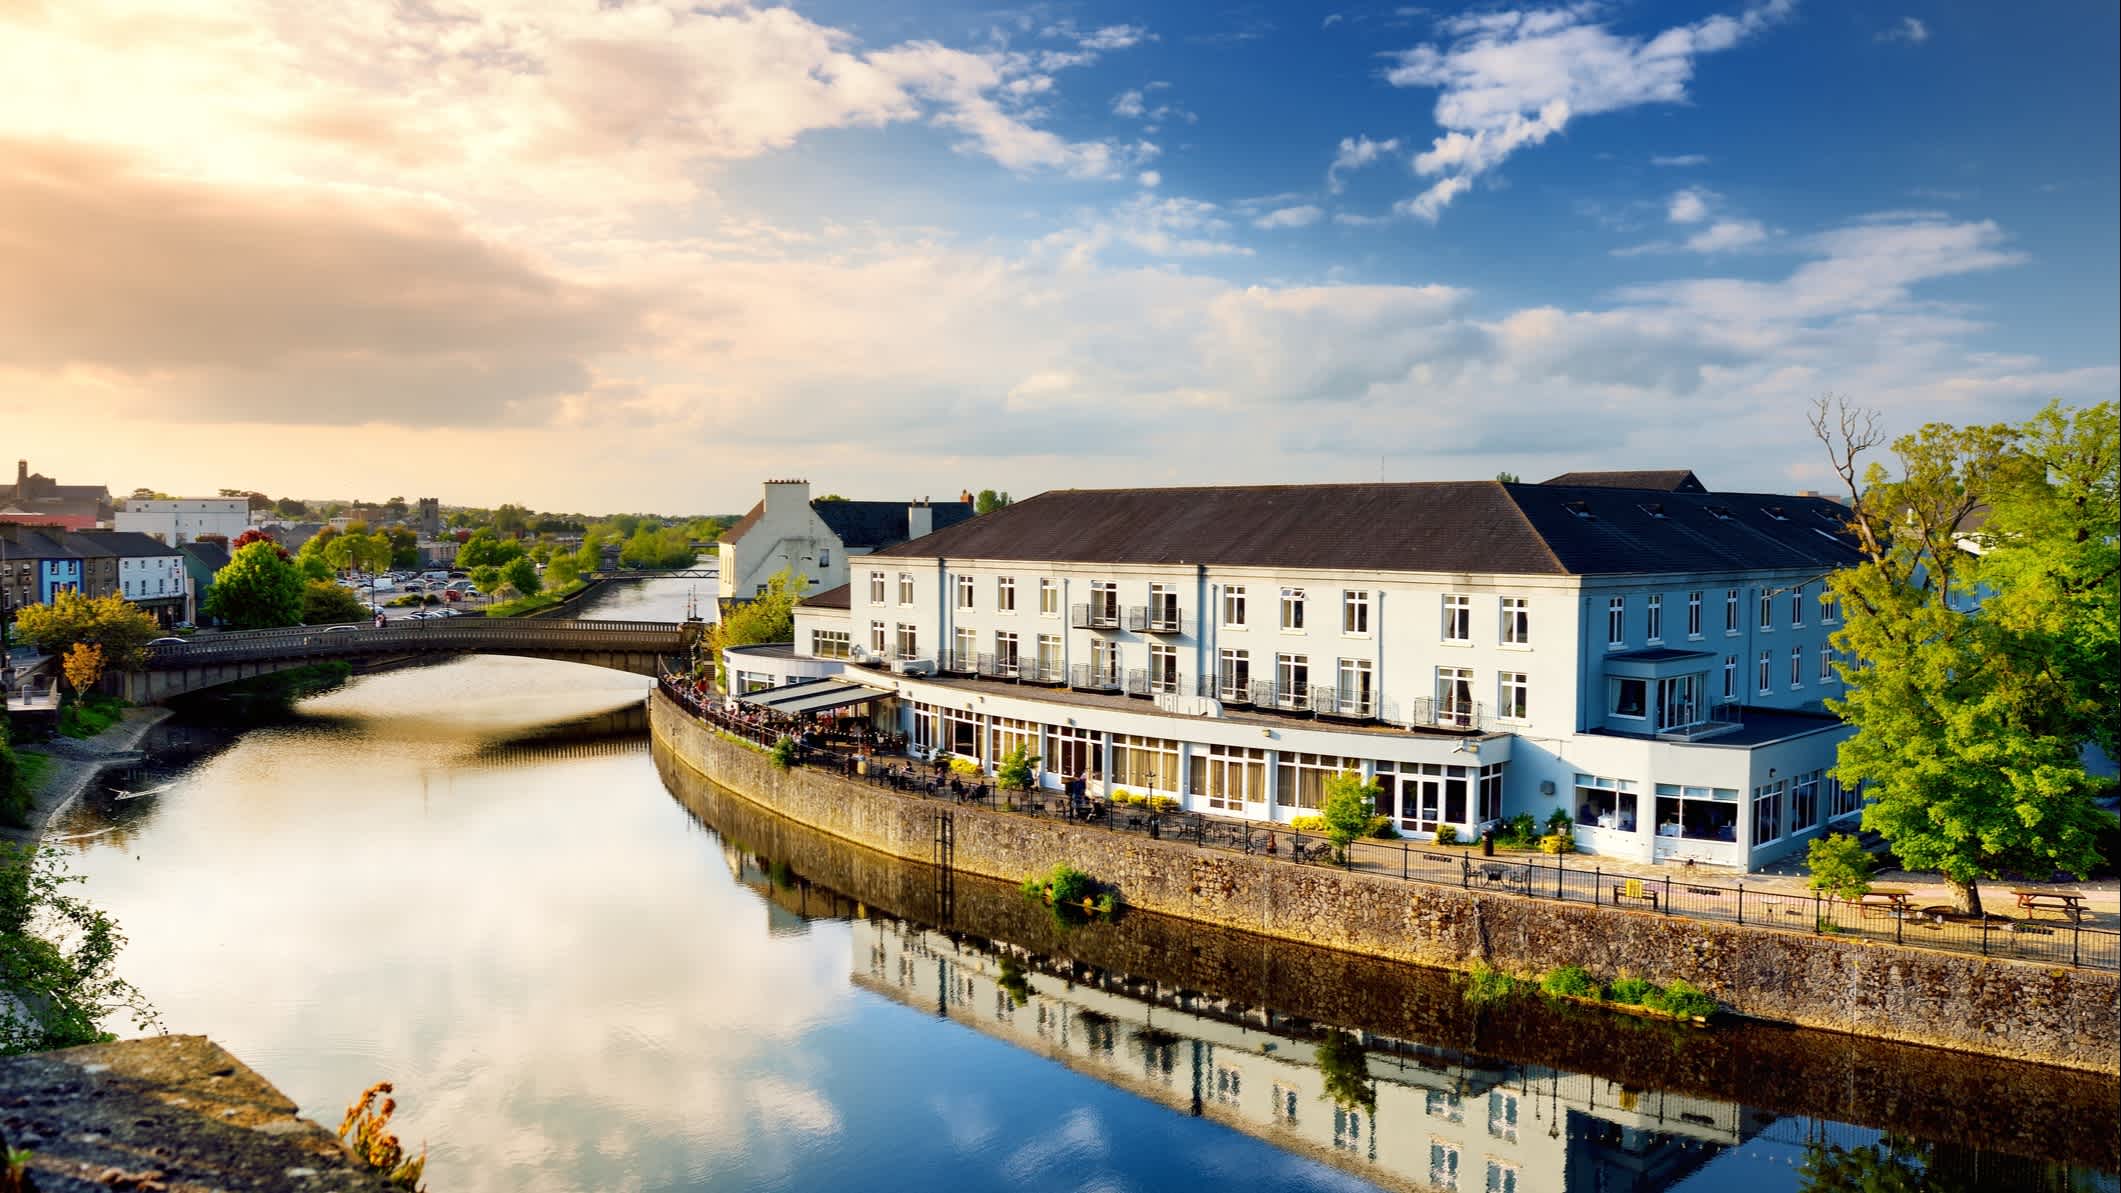 Vue imprenable sur les rives de la rivière Nore à Kilkenny, l'une des plus belles villes d'Irlande